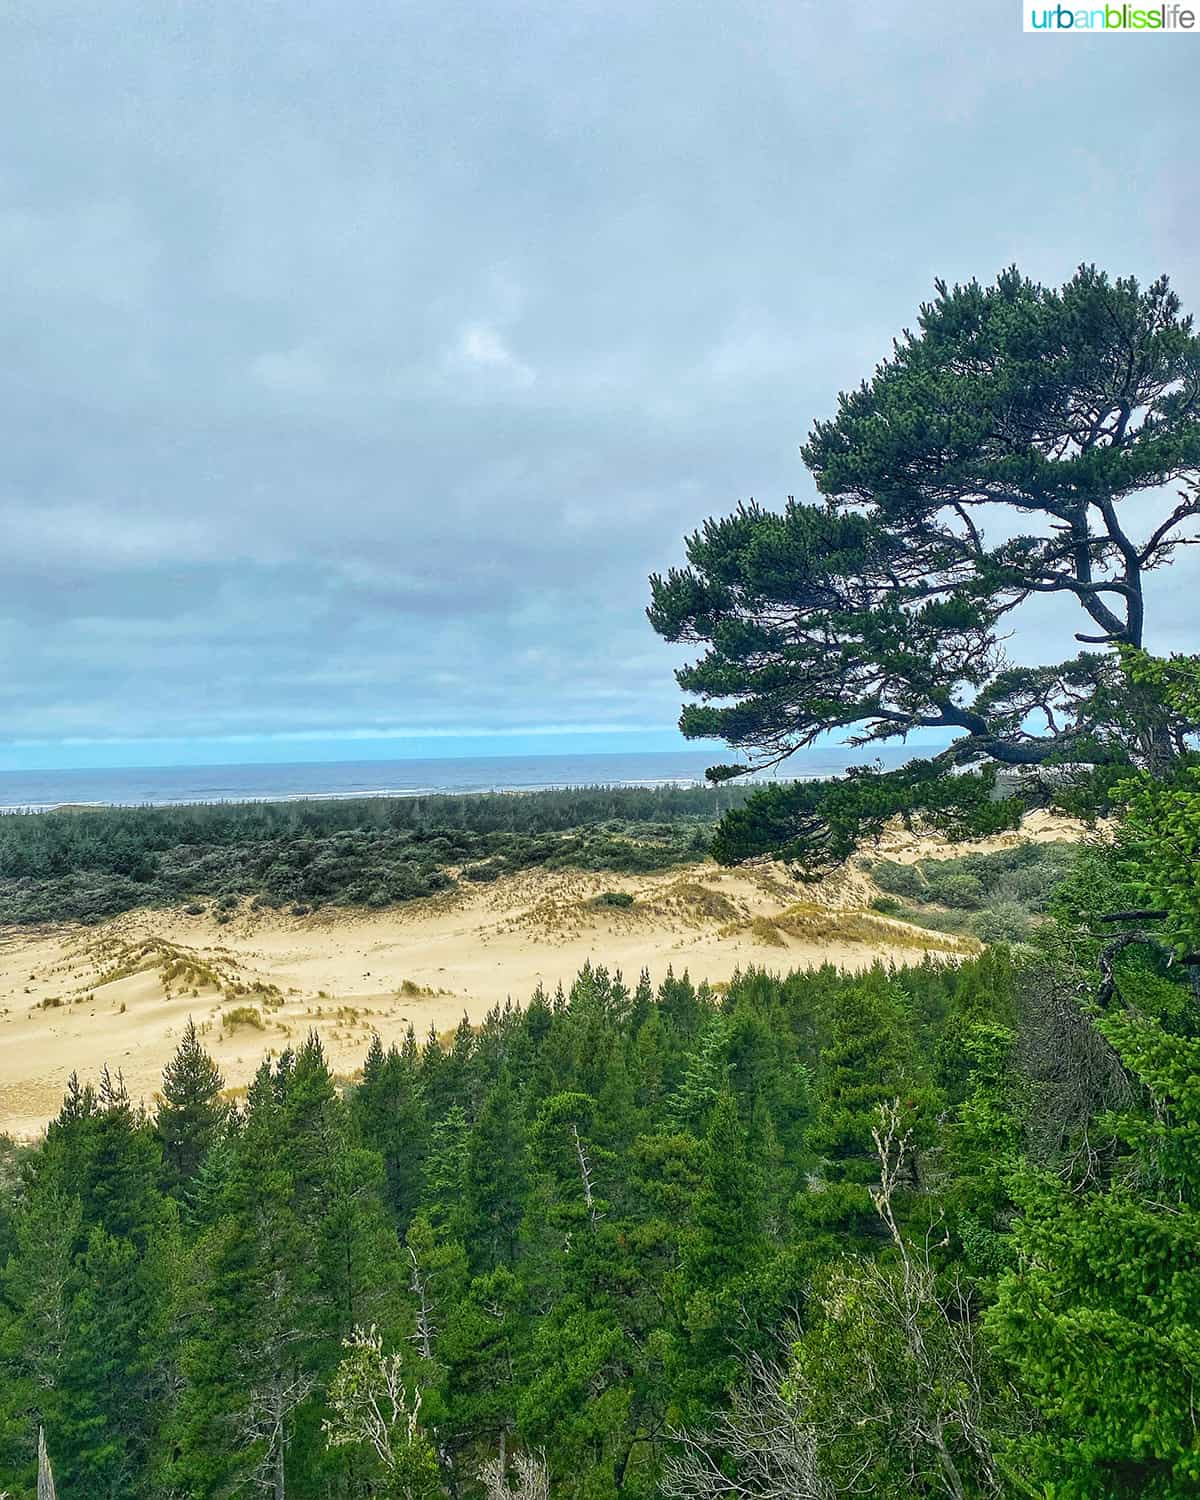 oregon dunes near bandon